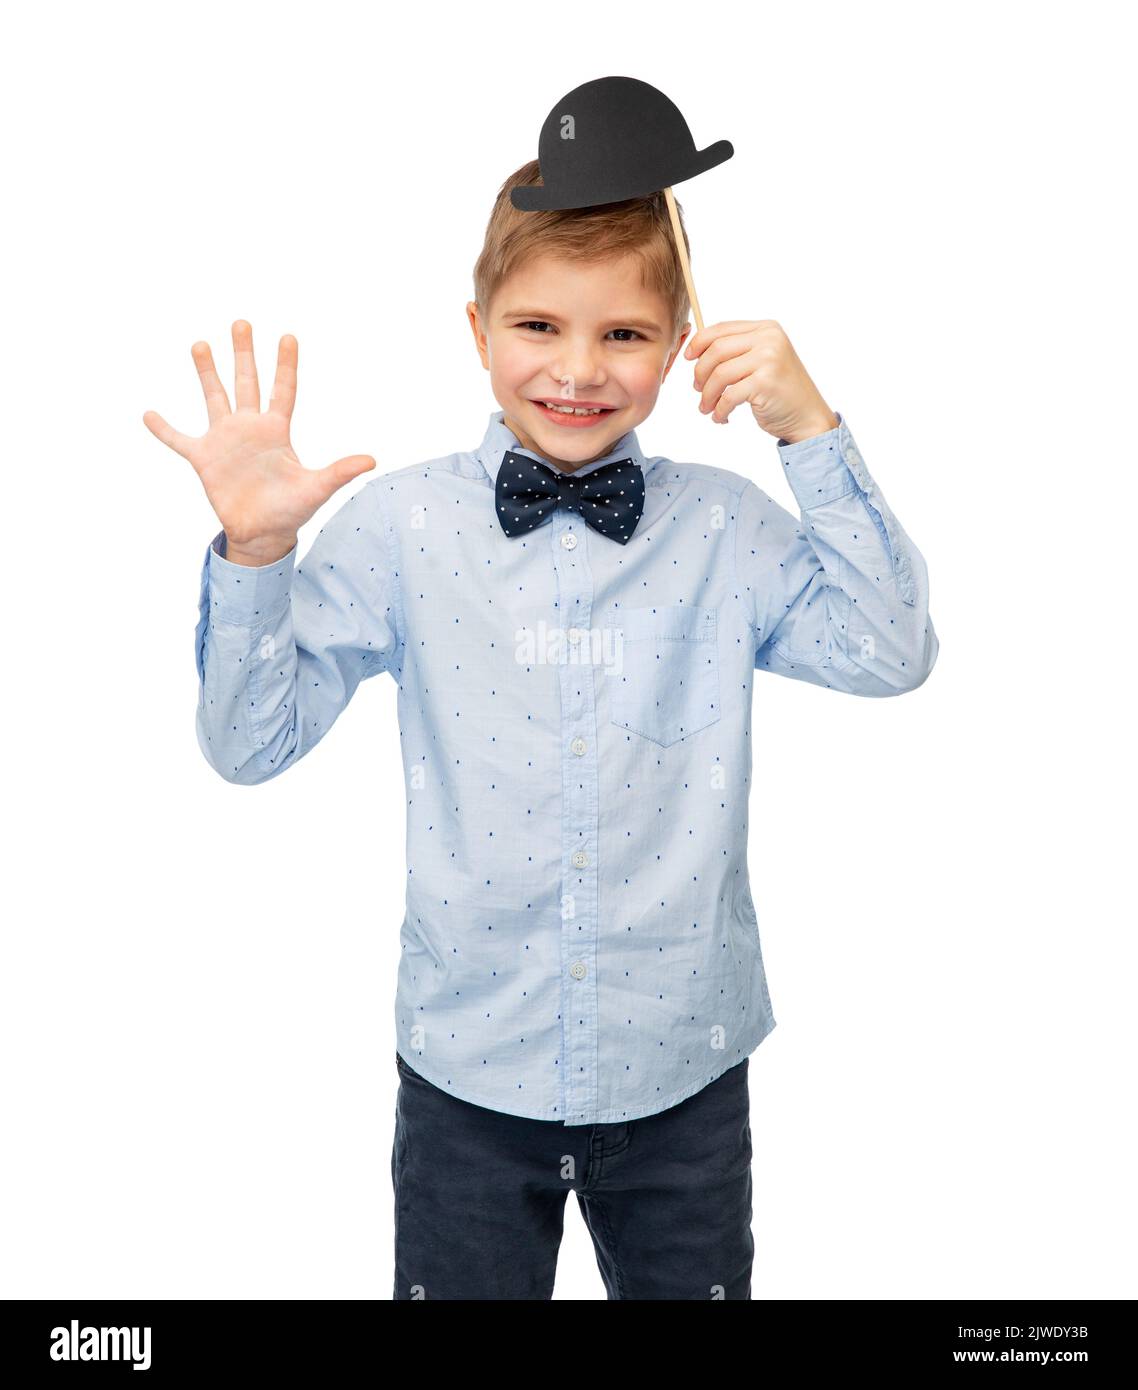 niño con accesorios de fiesta de cumpleaños y sombrero de bowler Foto de stock